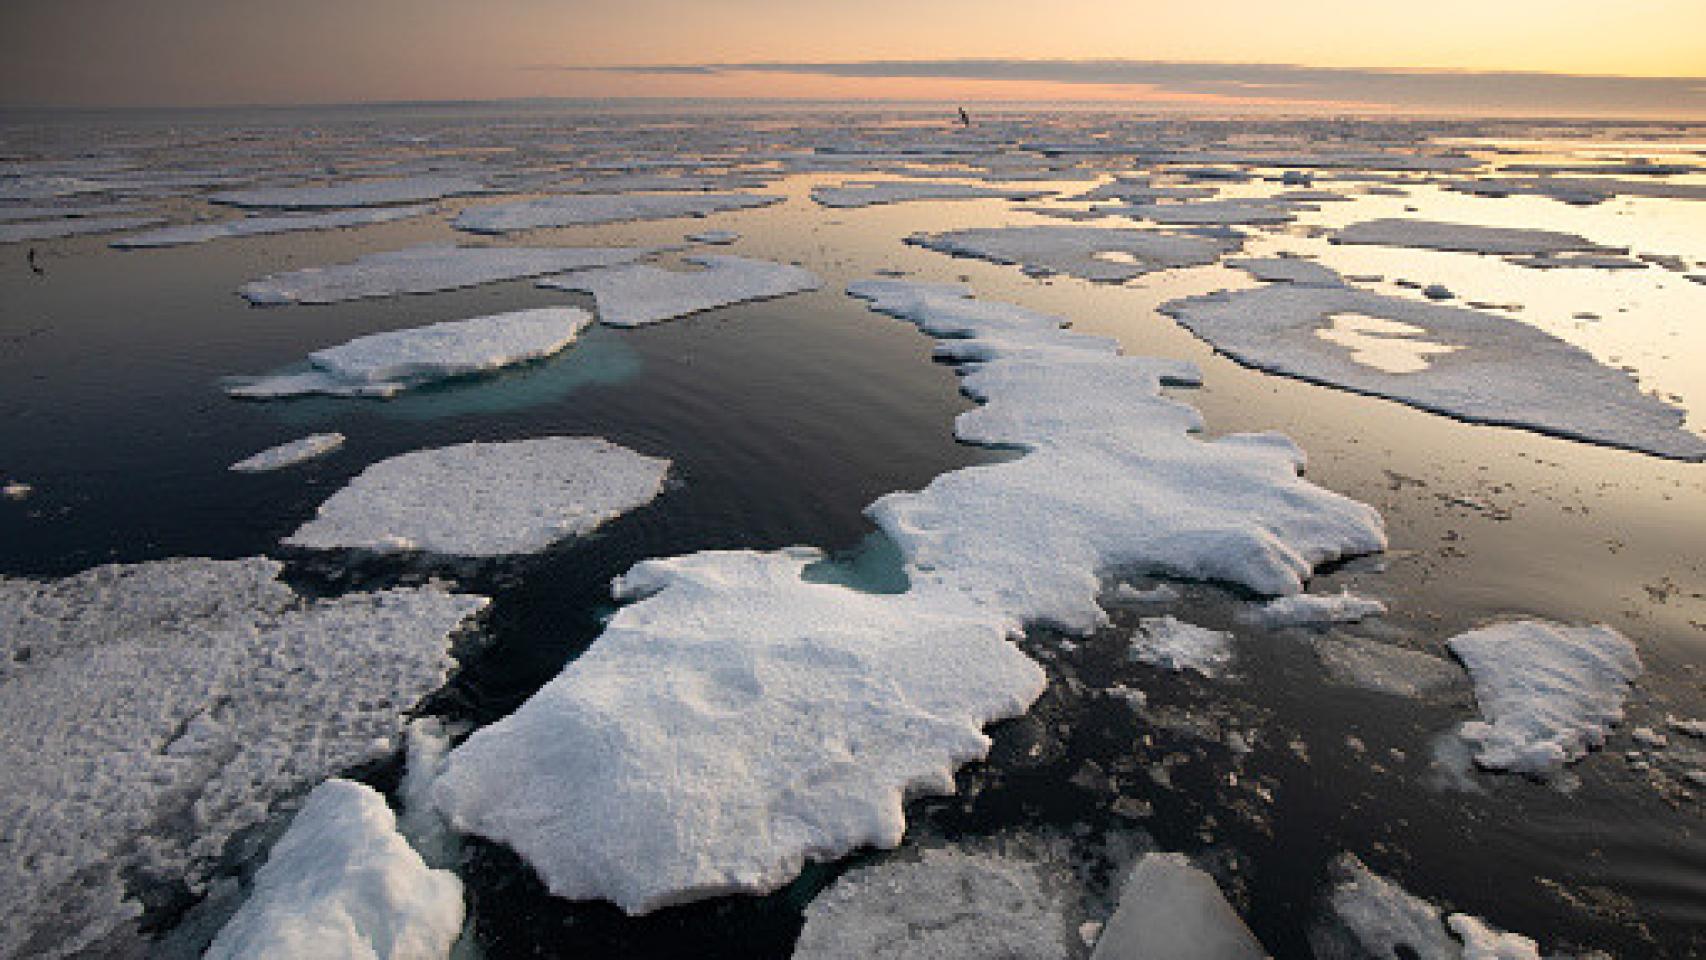 Imagen de archivo del océano Ártico con plataformas de hielo marino.